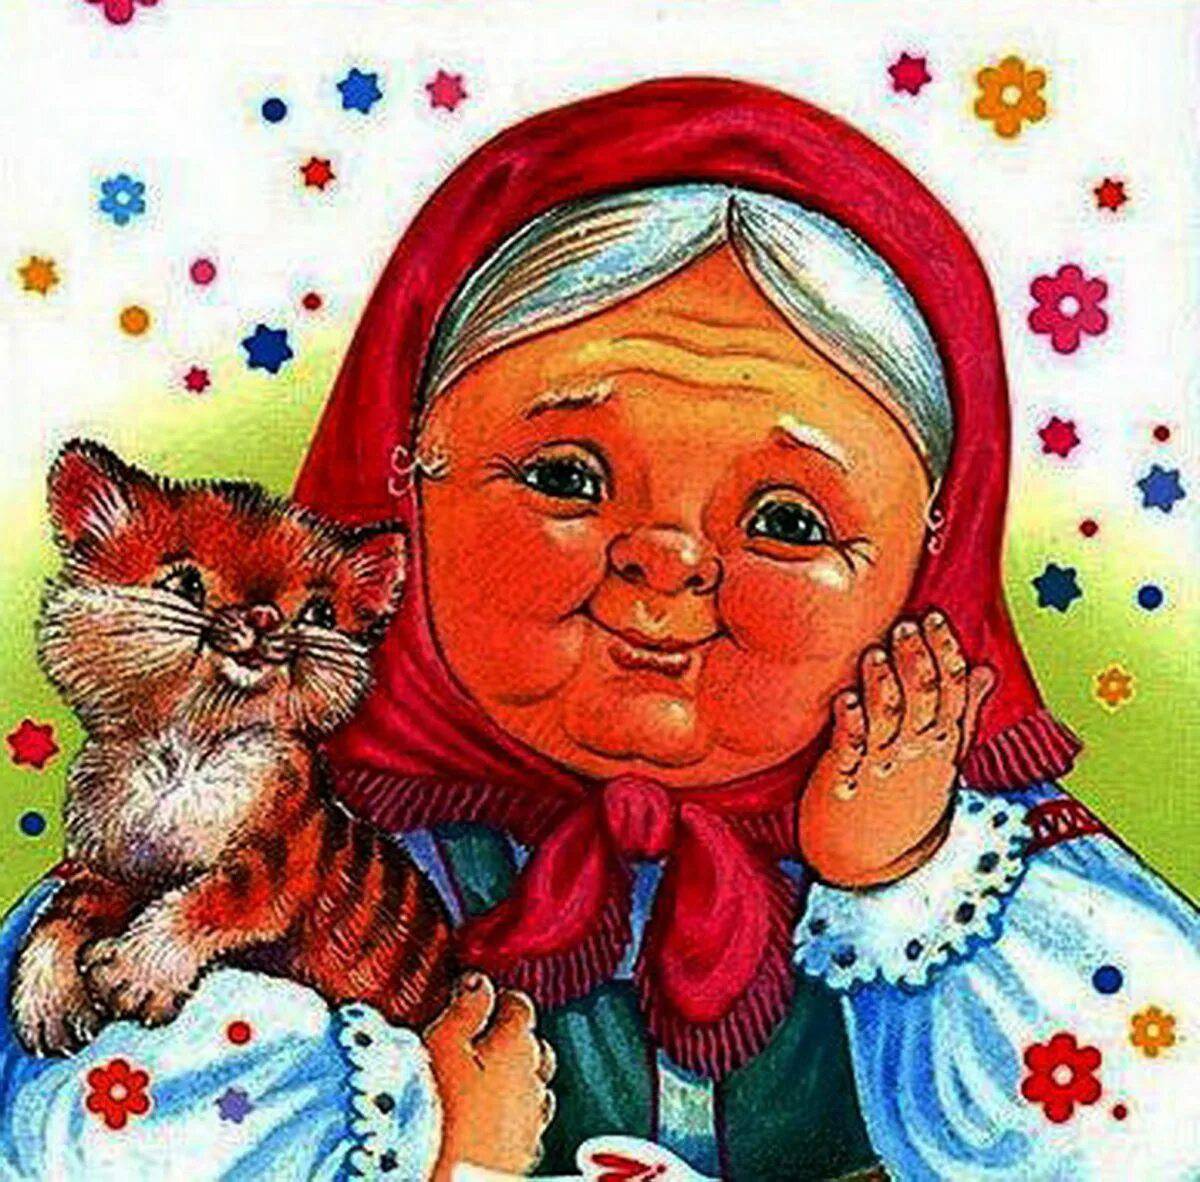 Рисуем открытку с детьми. Скоро День Матери - бабушке и маме понравится | Растем вместе | Дзен